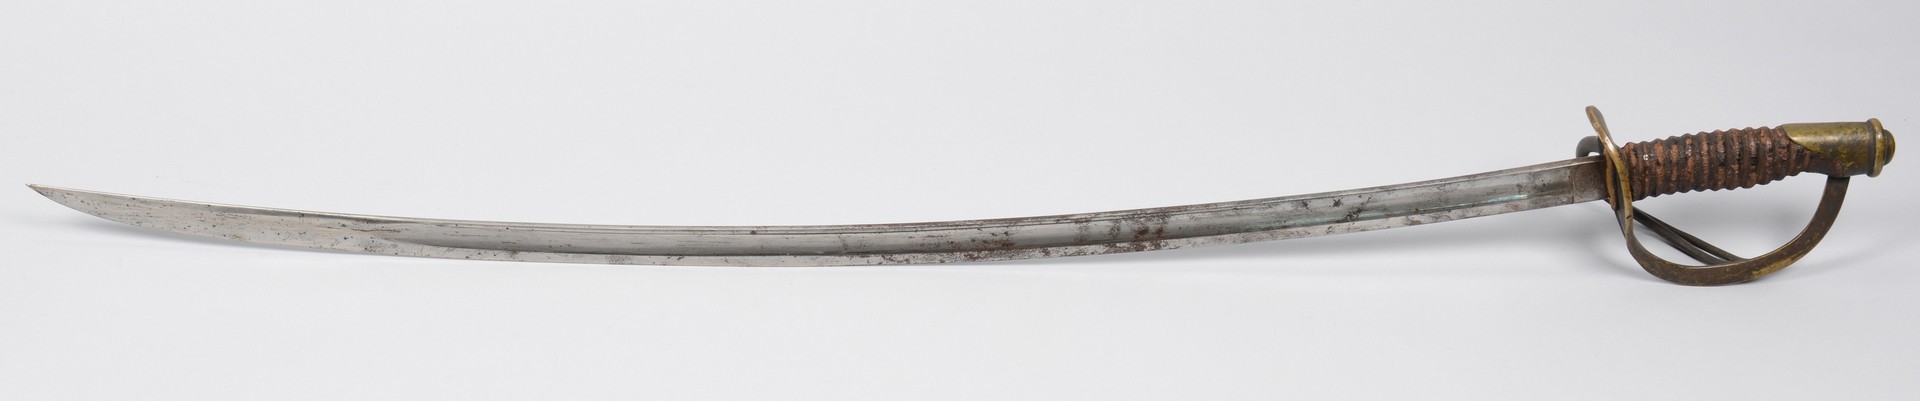 Lot 530: Pair of Model 1860 Swords, Civil War